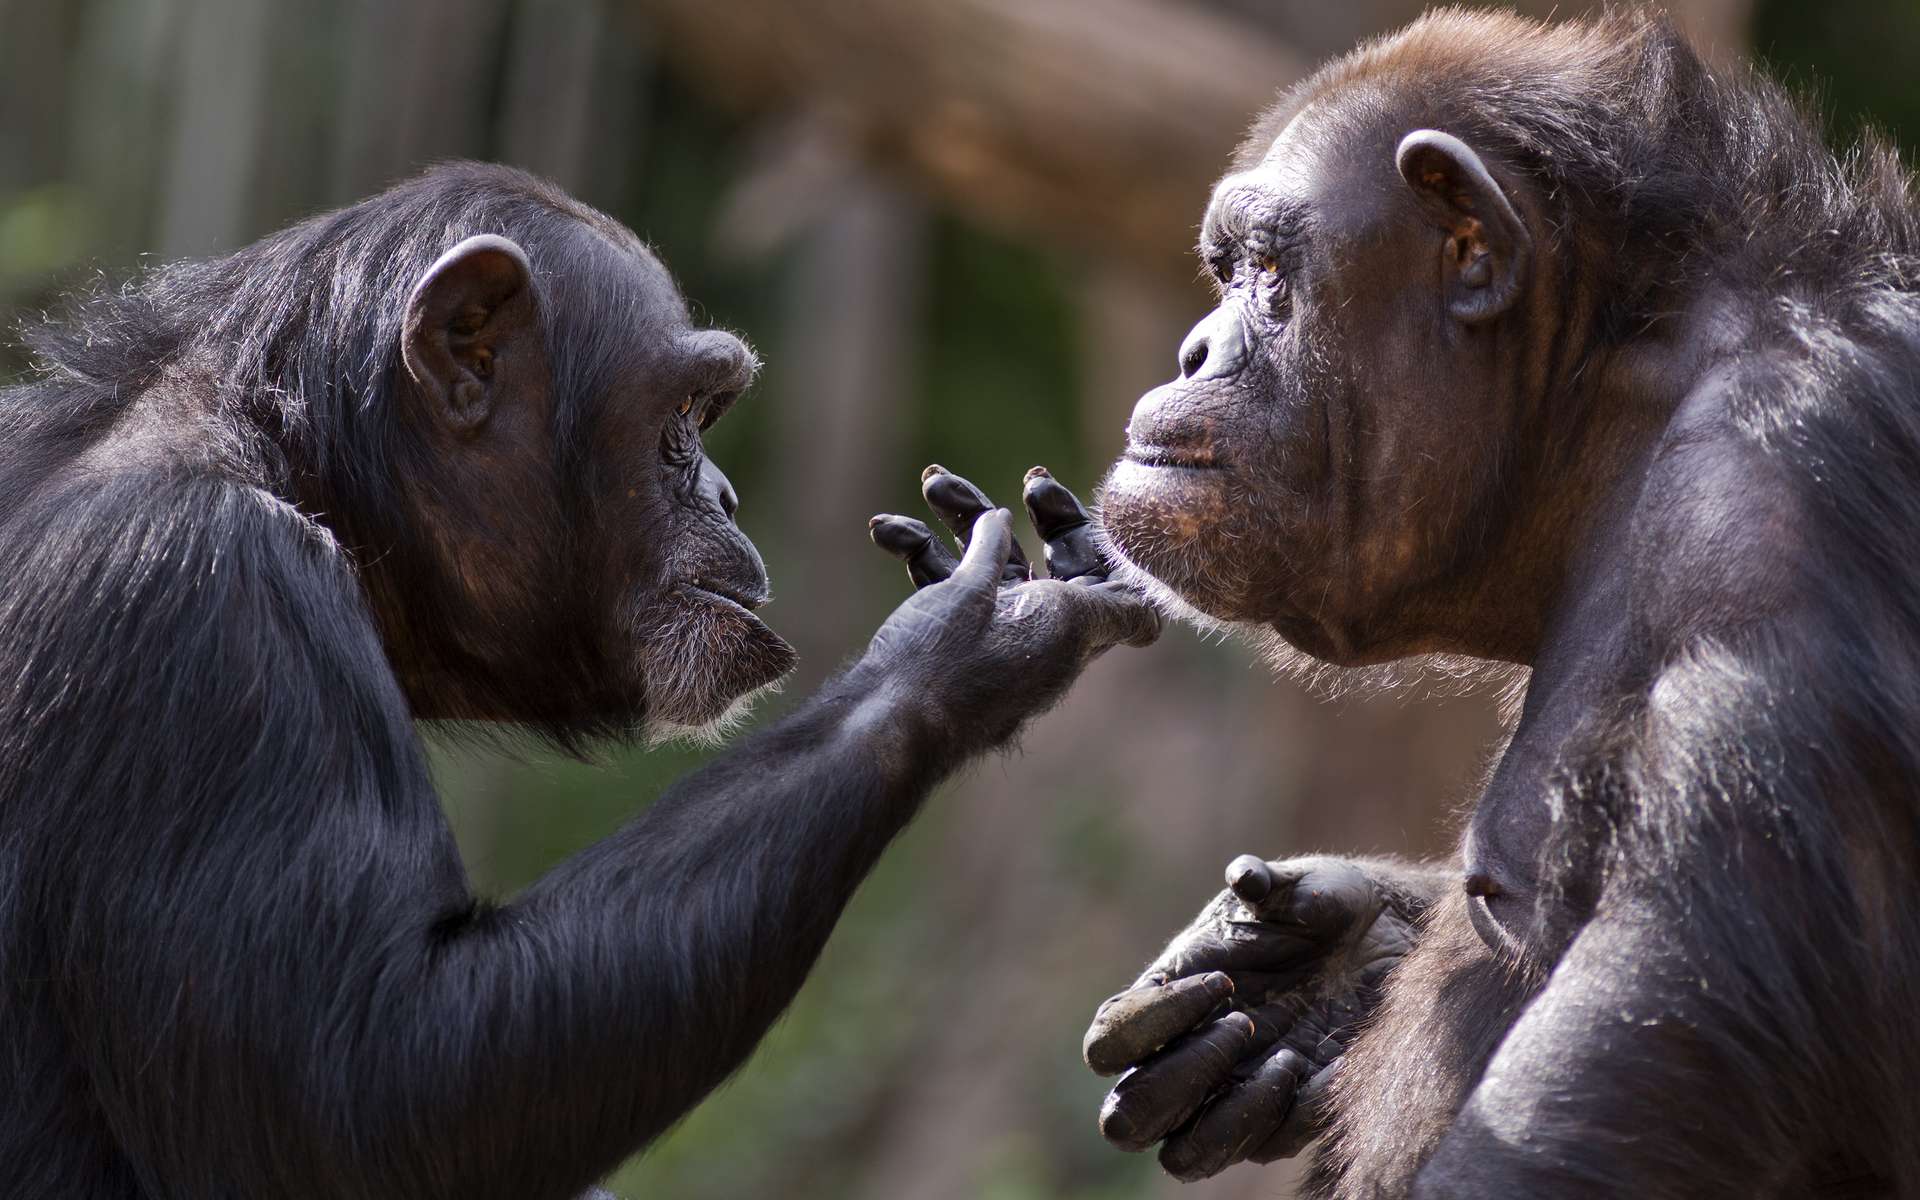 L’analyse des vocalisations des singes permet de déceler les prémices de l’émergence de la communication grâce à un répertoire de sons et de faire de nouvelles hypothèses. © Patrick Rolands, Adobe Stock